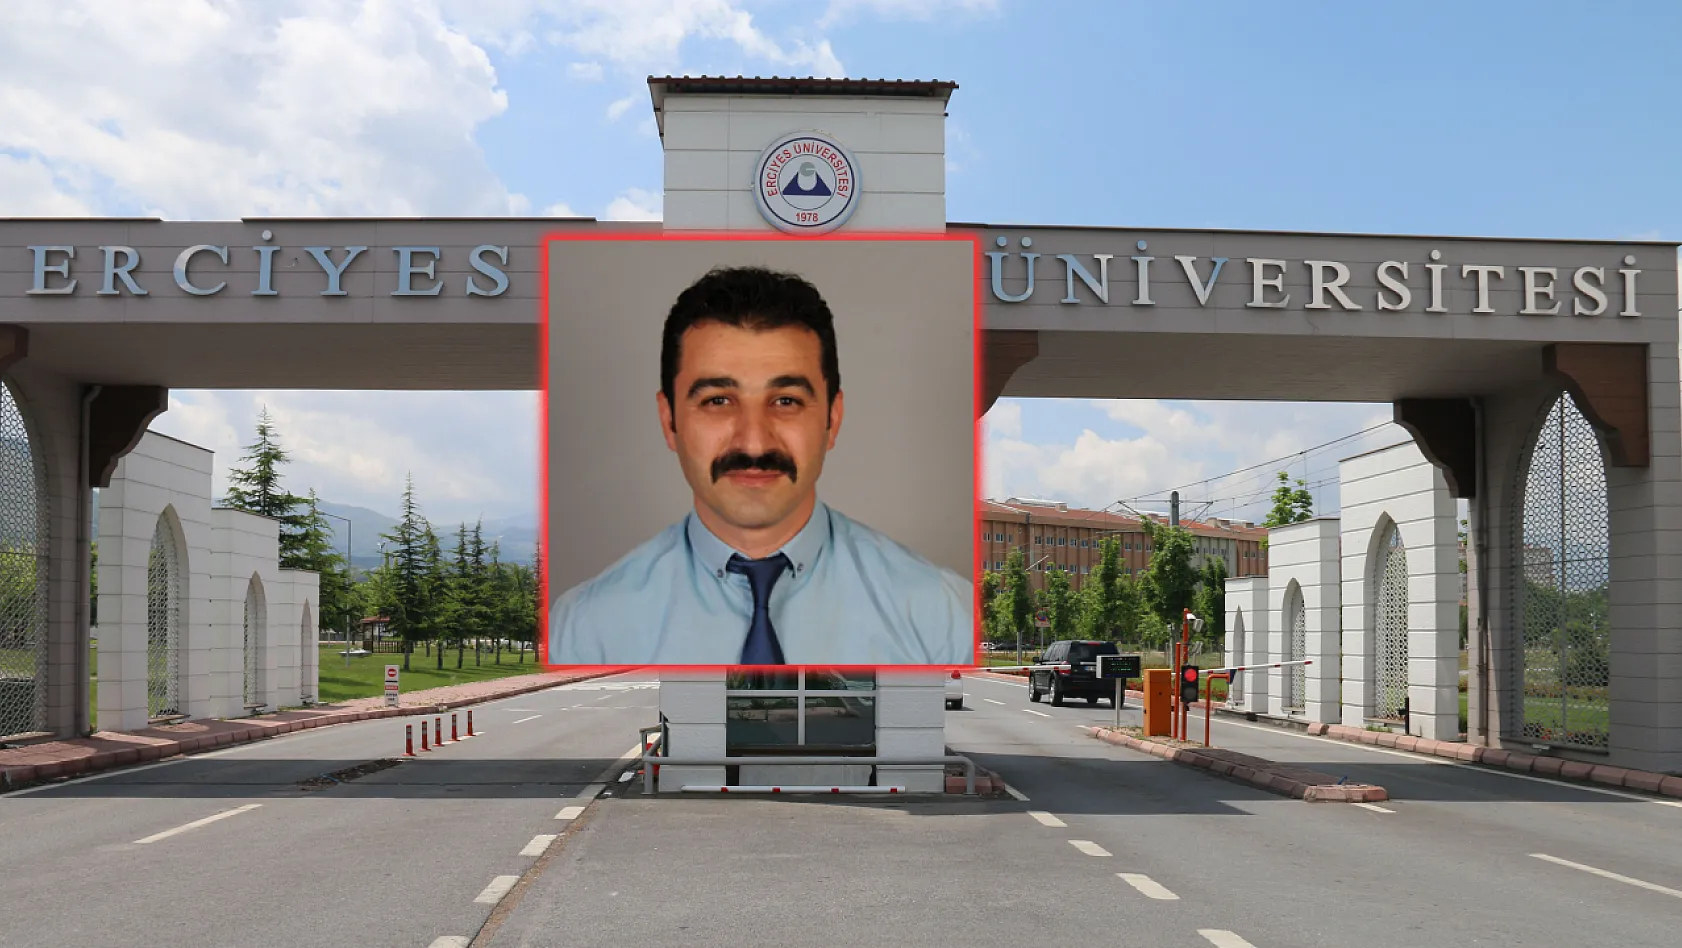 Kayseri Erciyes Üniversitesinde flaş atama! İşte yeni görevi